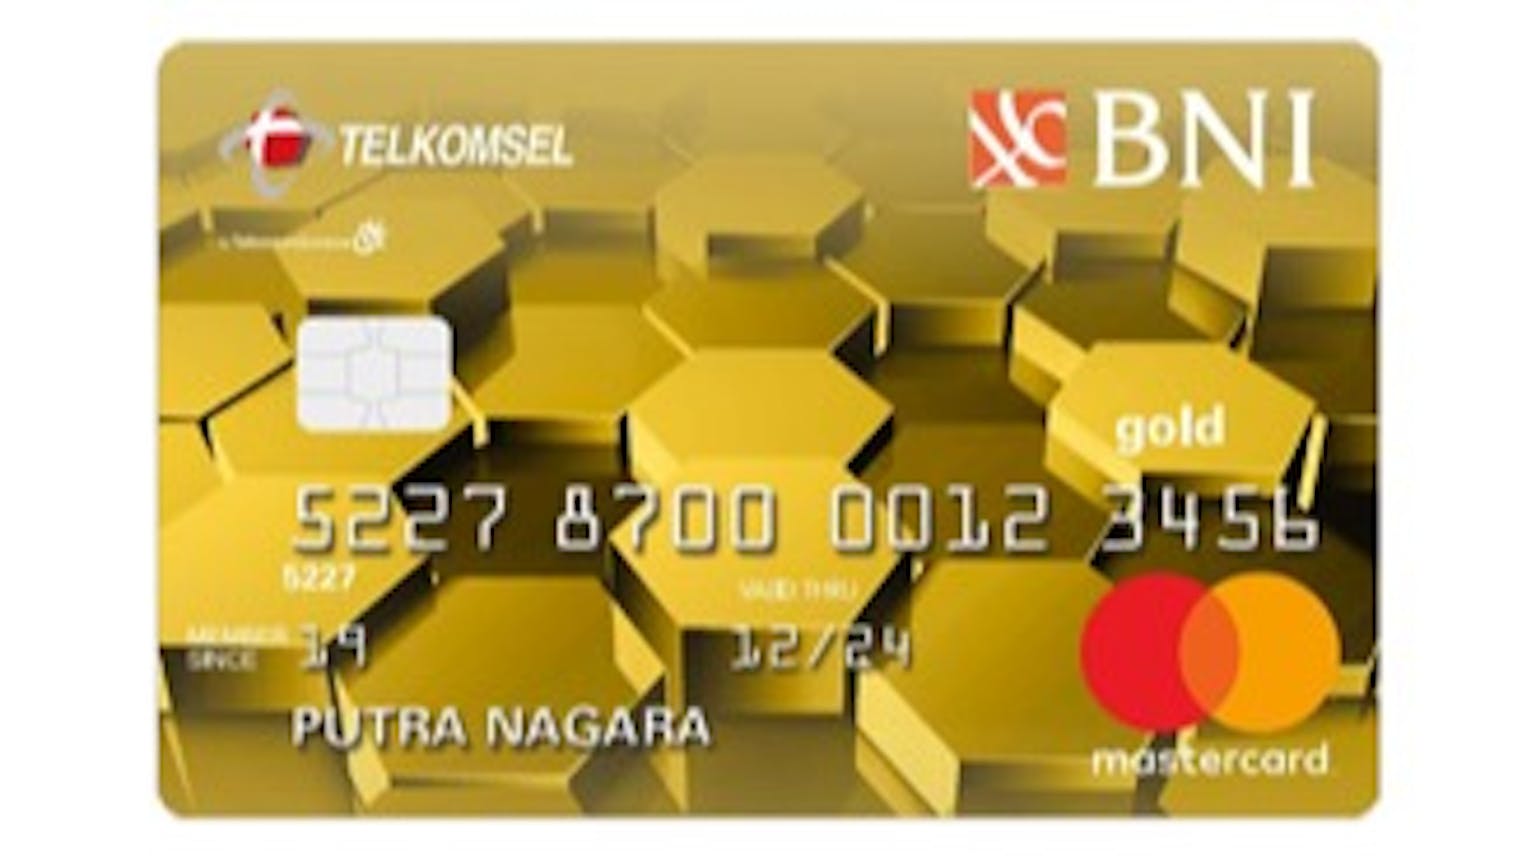 BNI Telkomsel Gold